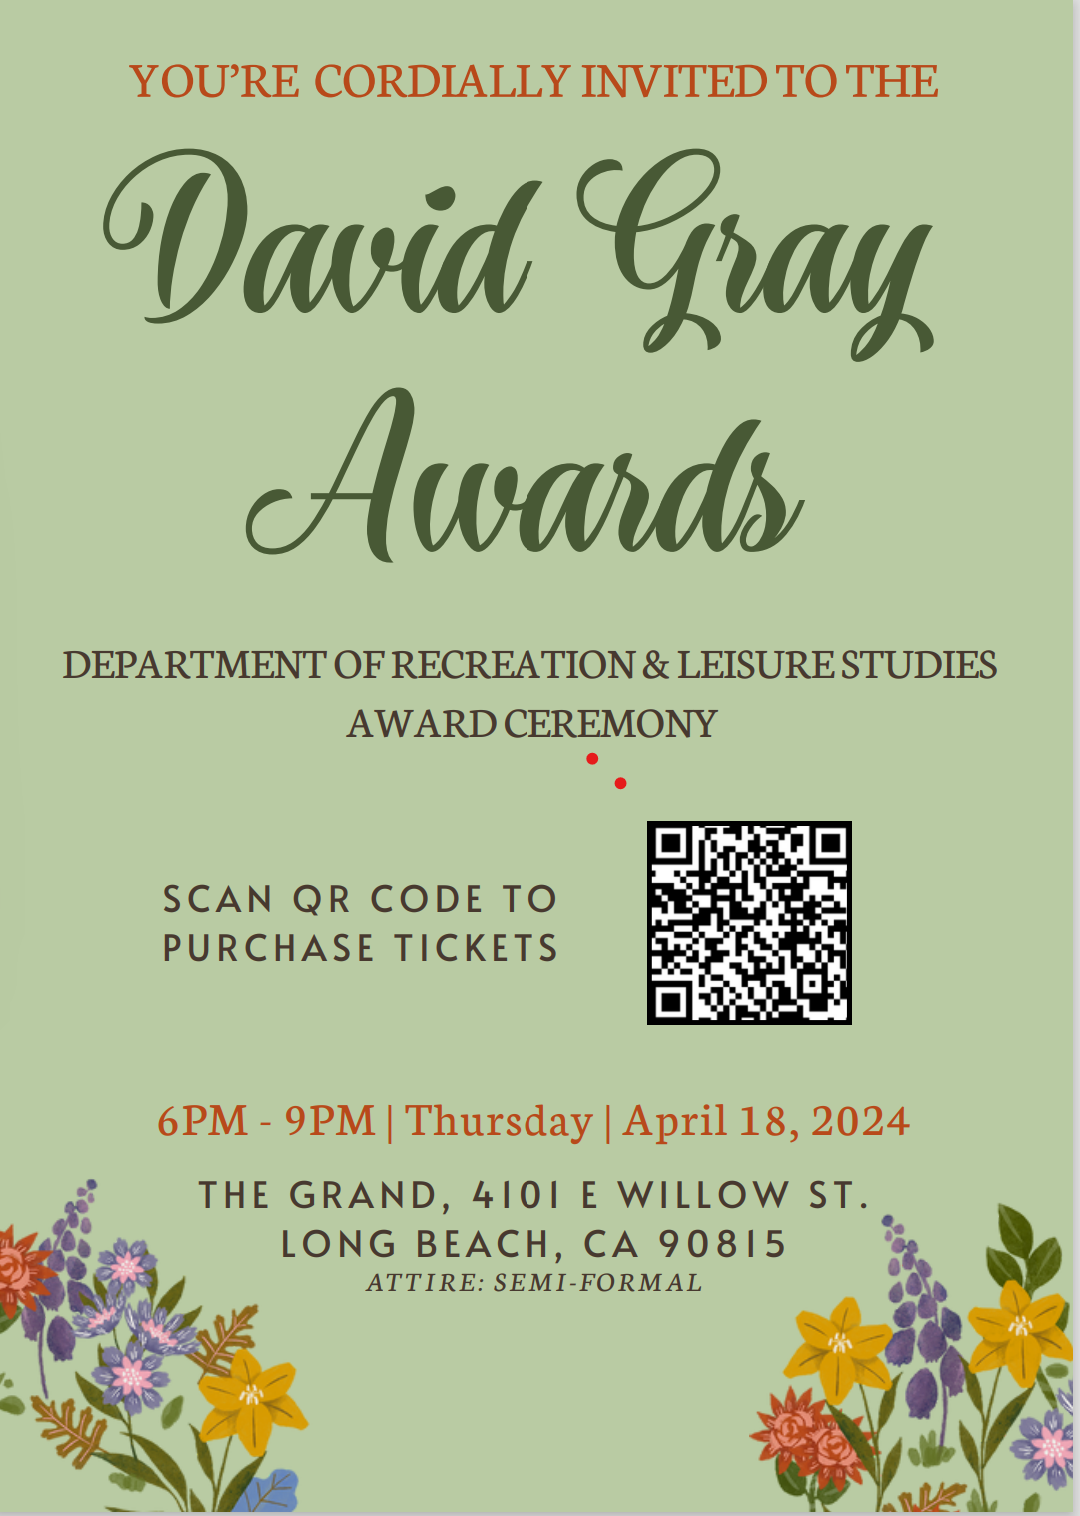 David Gray Awards flyer